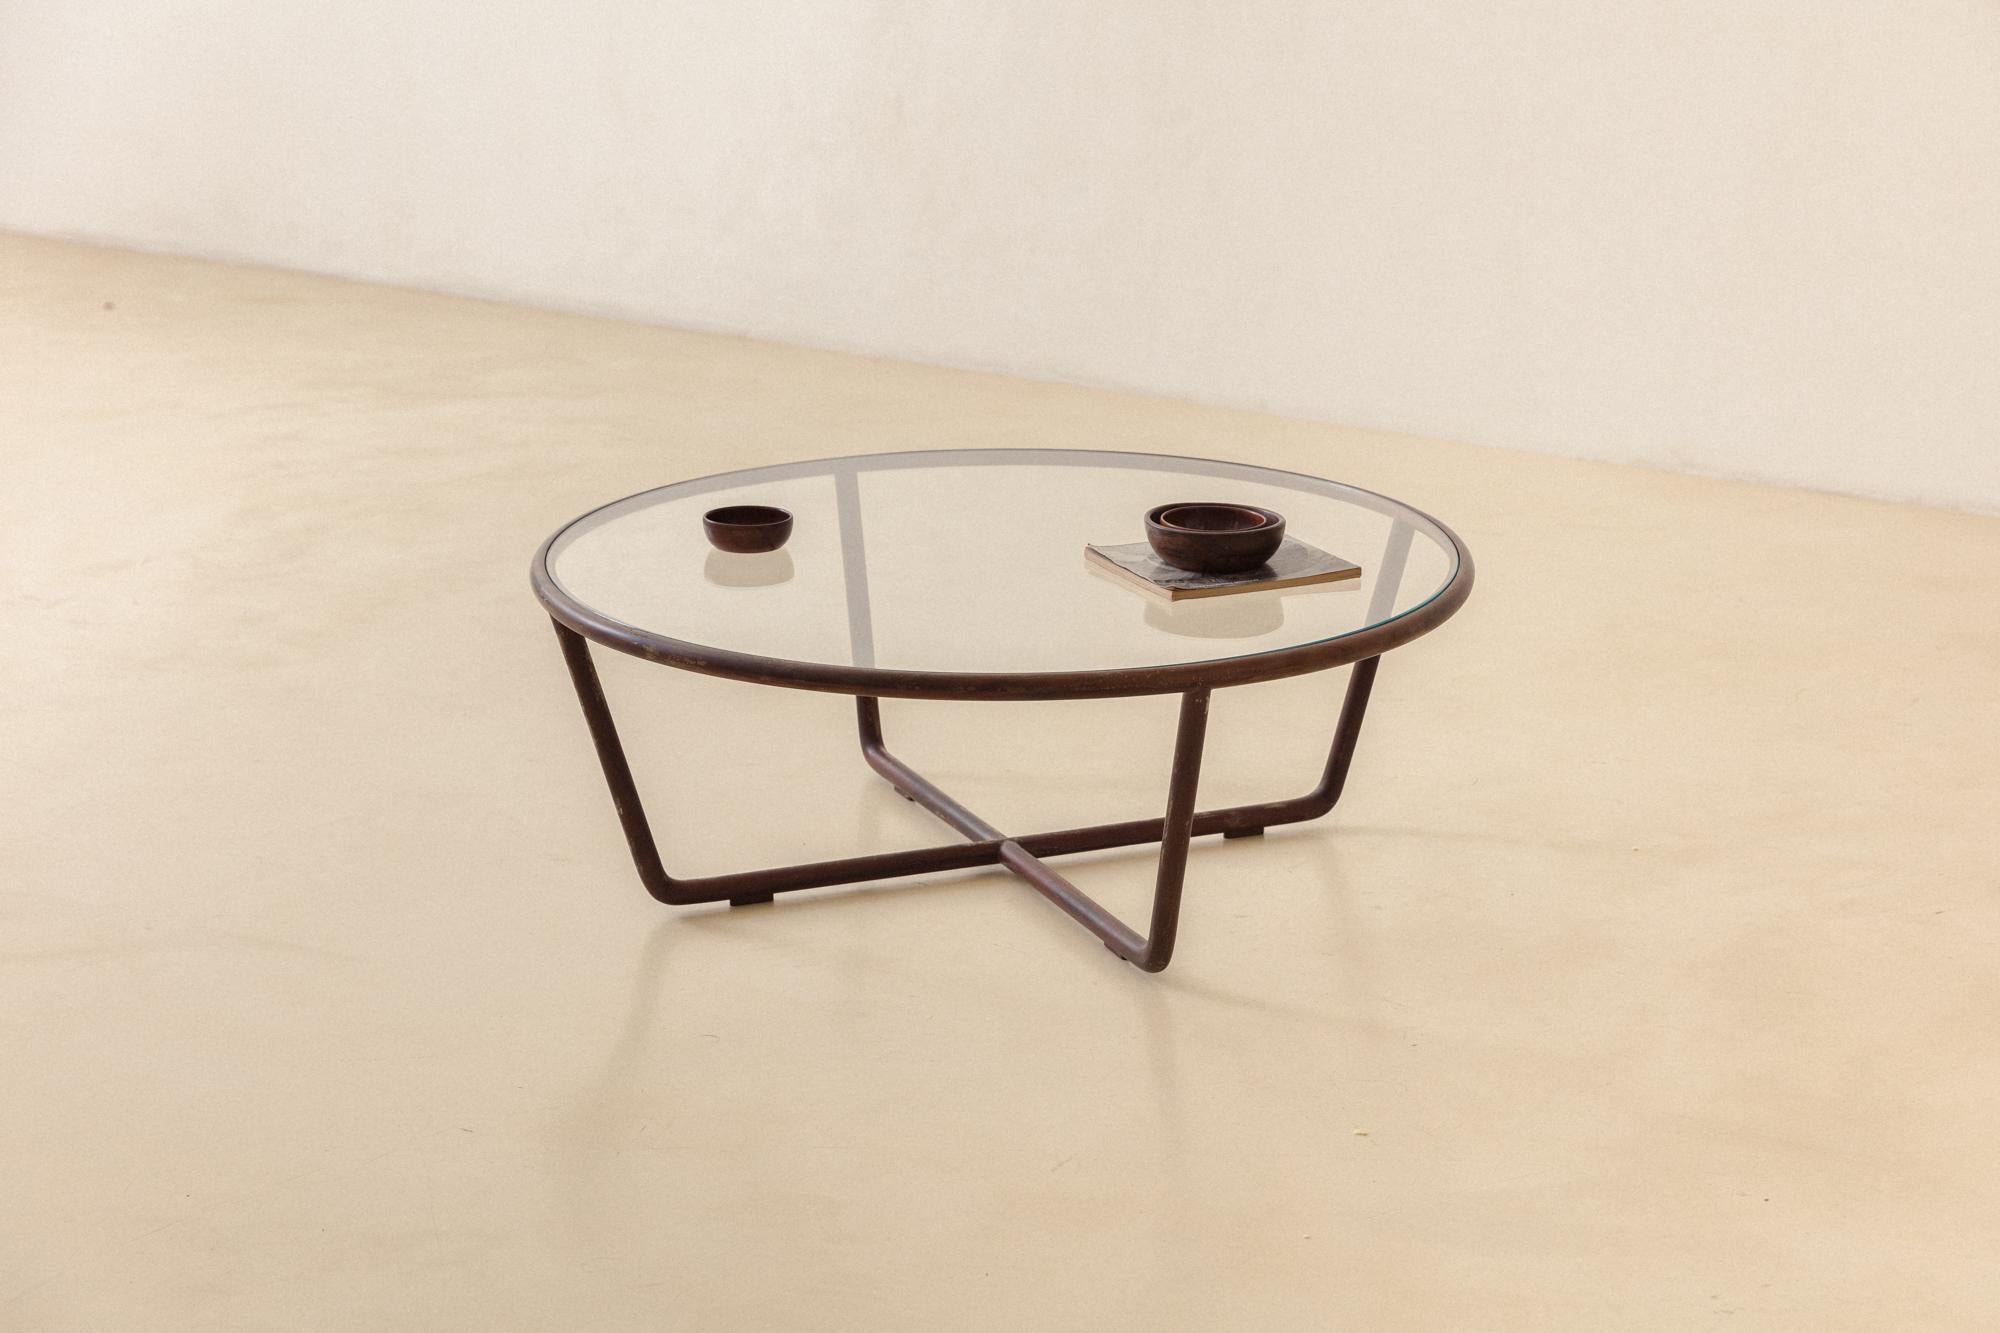 Joaquim Tenreiro (1906-1992) a conçu cette table basse ronde en 1947 - à la même époque où il a créé d'autres pièces d'Estrutural, comme les célèbres chaises et table à manger.

Comme d'autres meubles conçus par Tenreiro, cette table basse légère